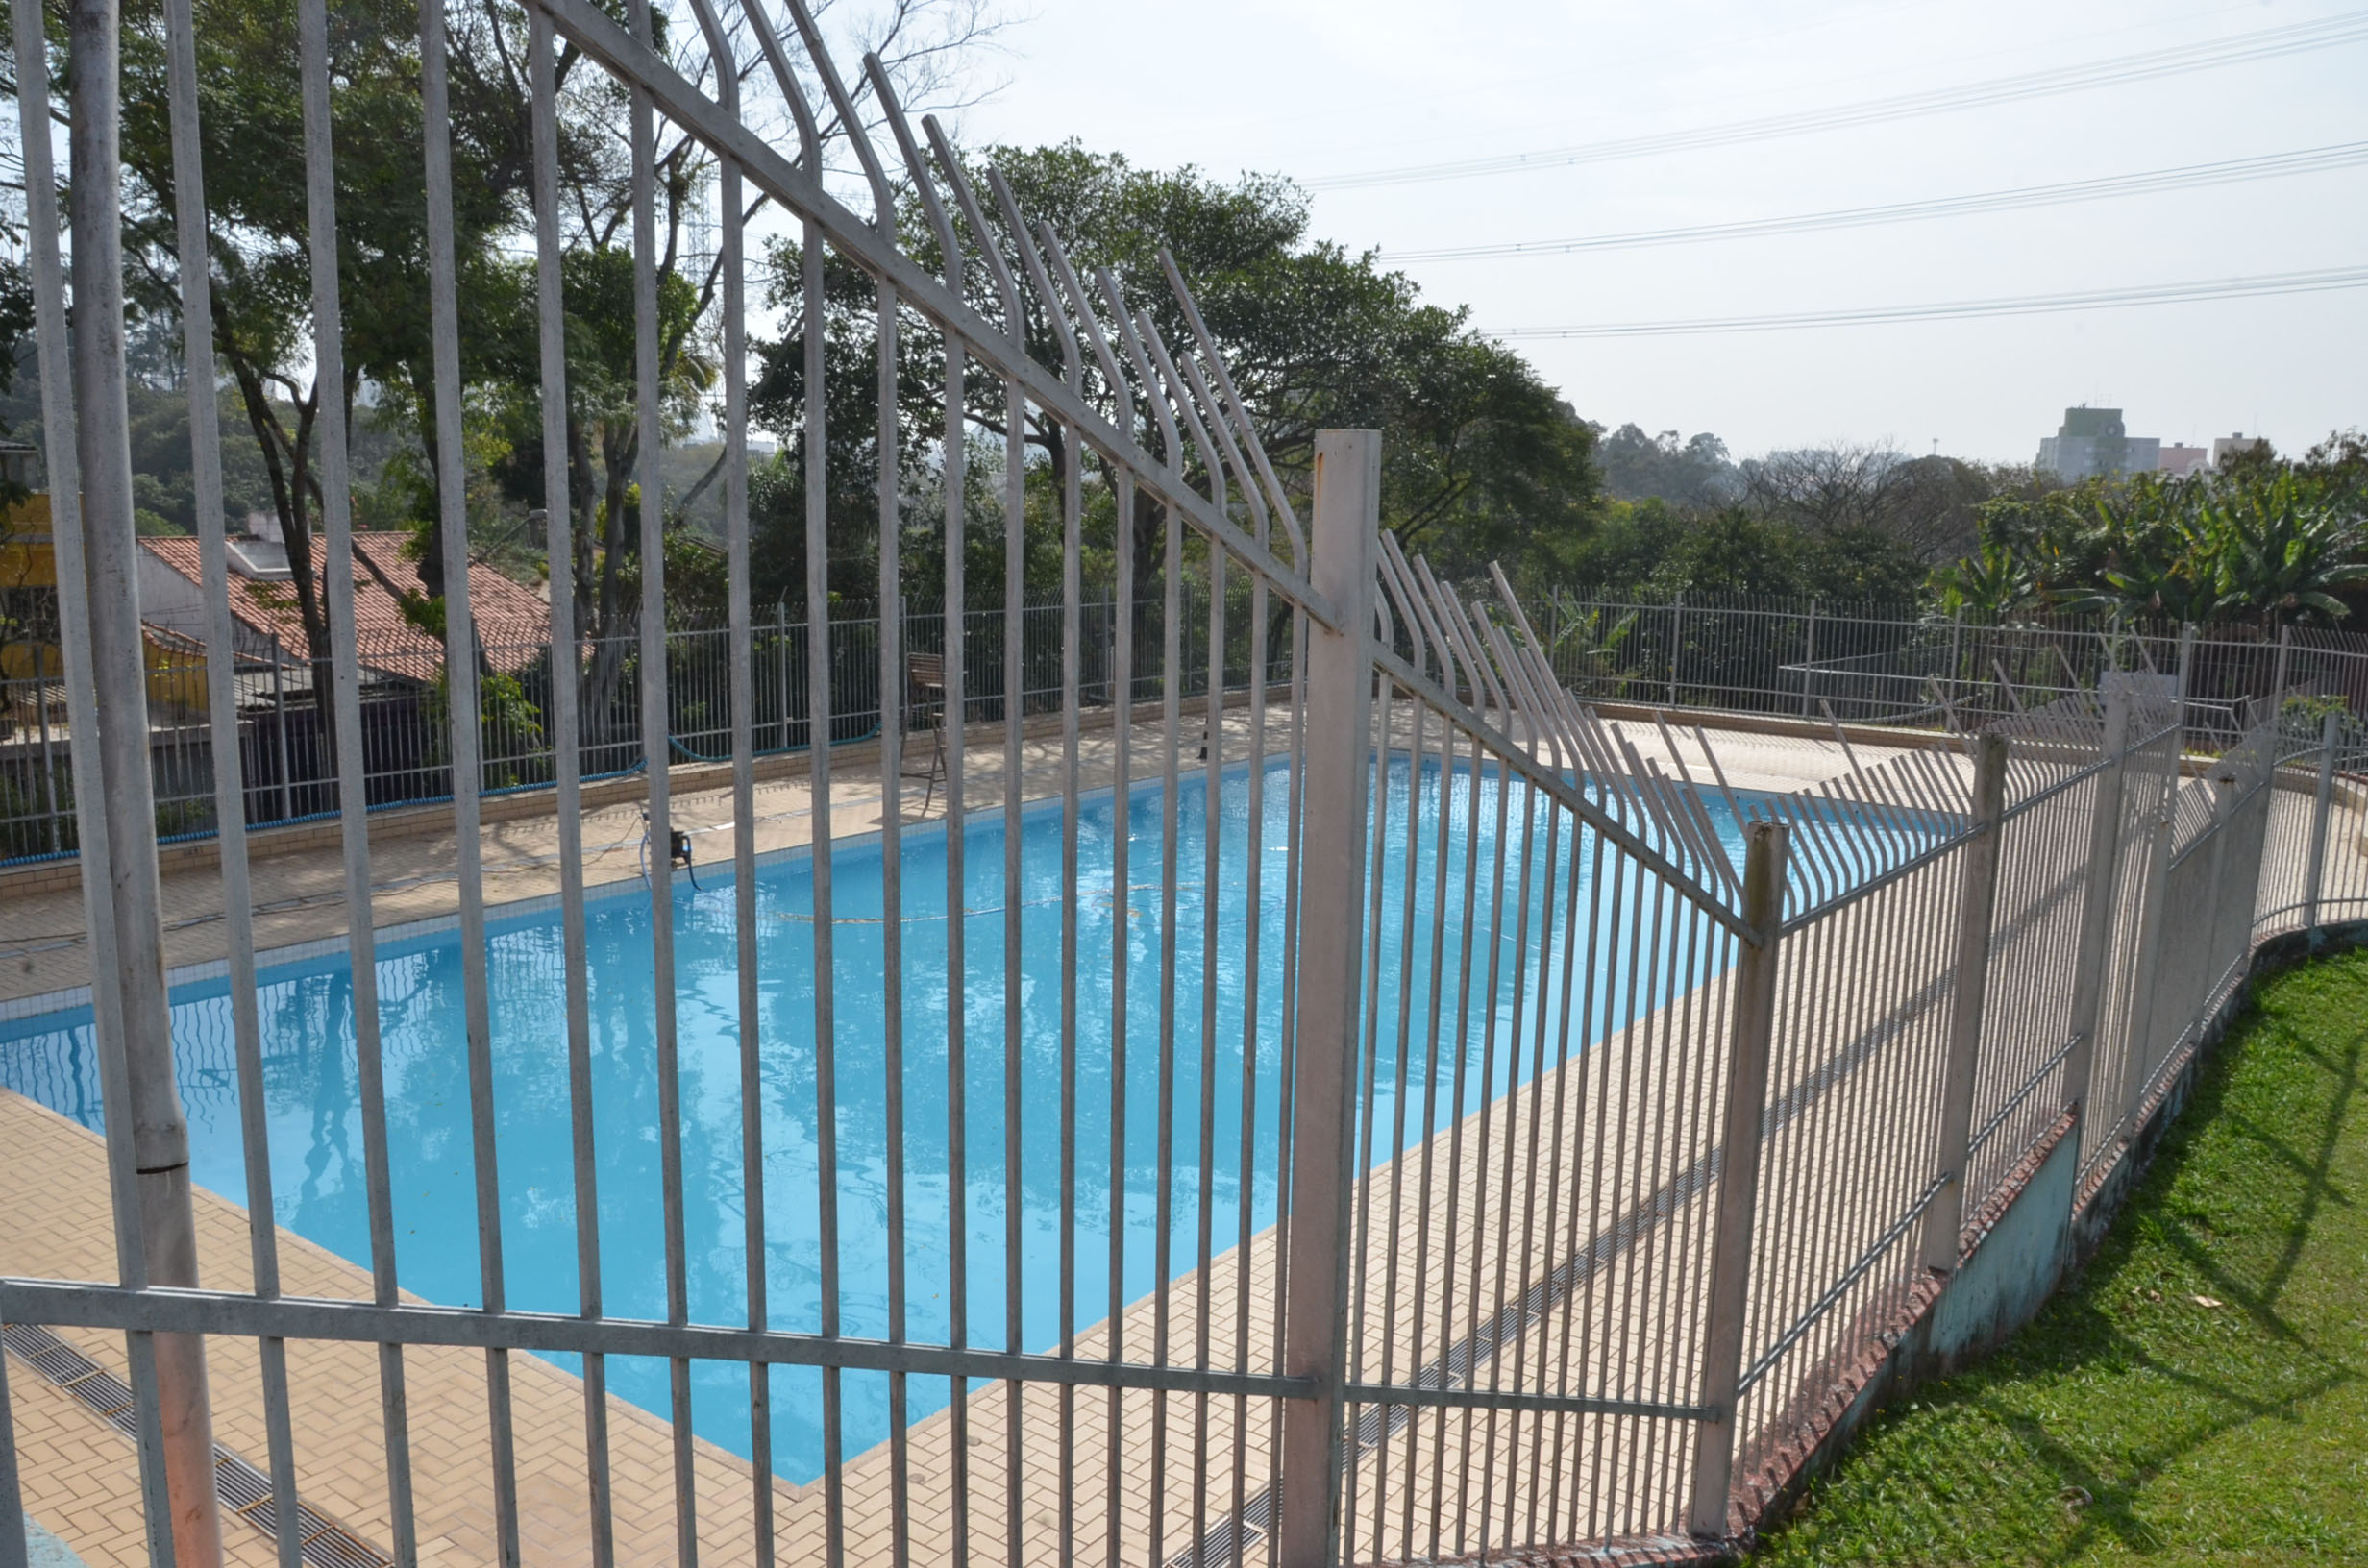 Foto da piscina de um Centro Esportivo municipal vazia em dia ensolarado.